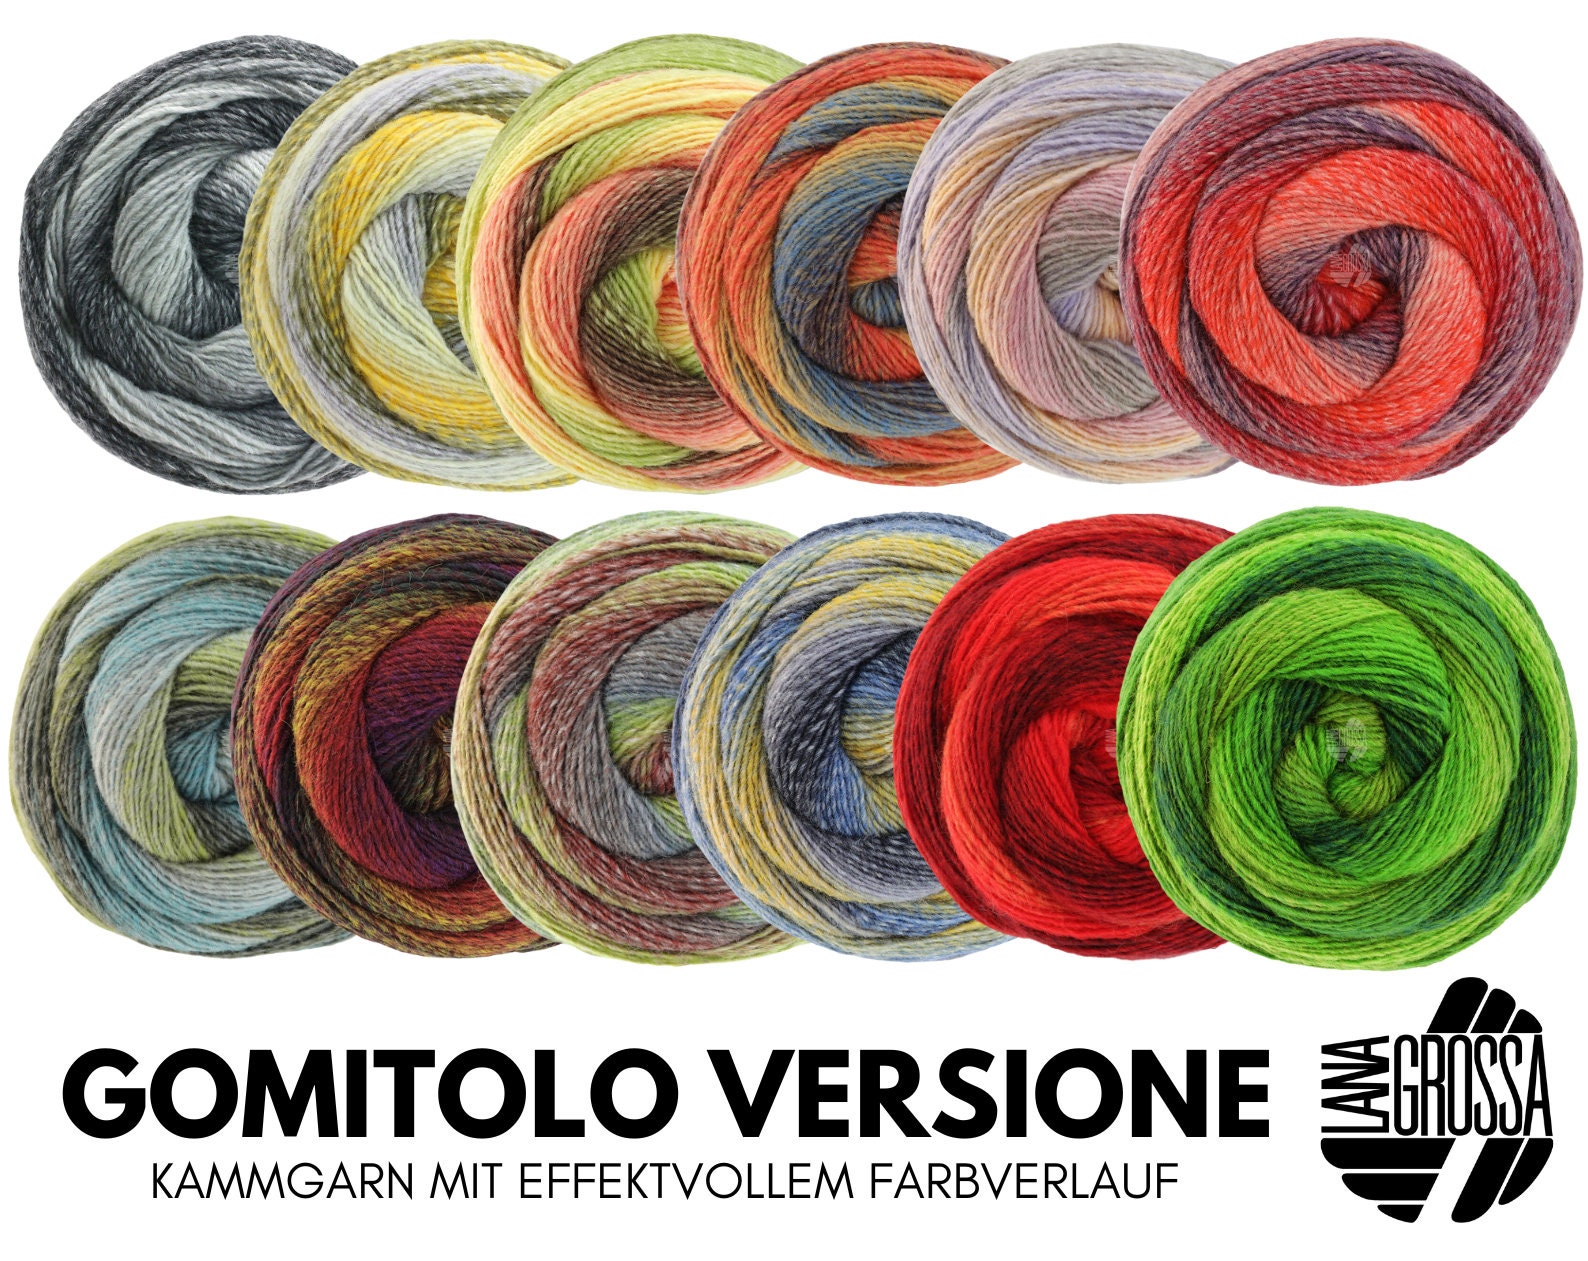 Lana Grossa VERSIONE GOMITOLO 200 g di filato pettinato leggermente ritorto  con efficace gradiente di colore e struttura 700 m -  Italia